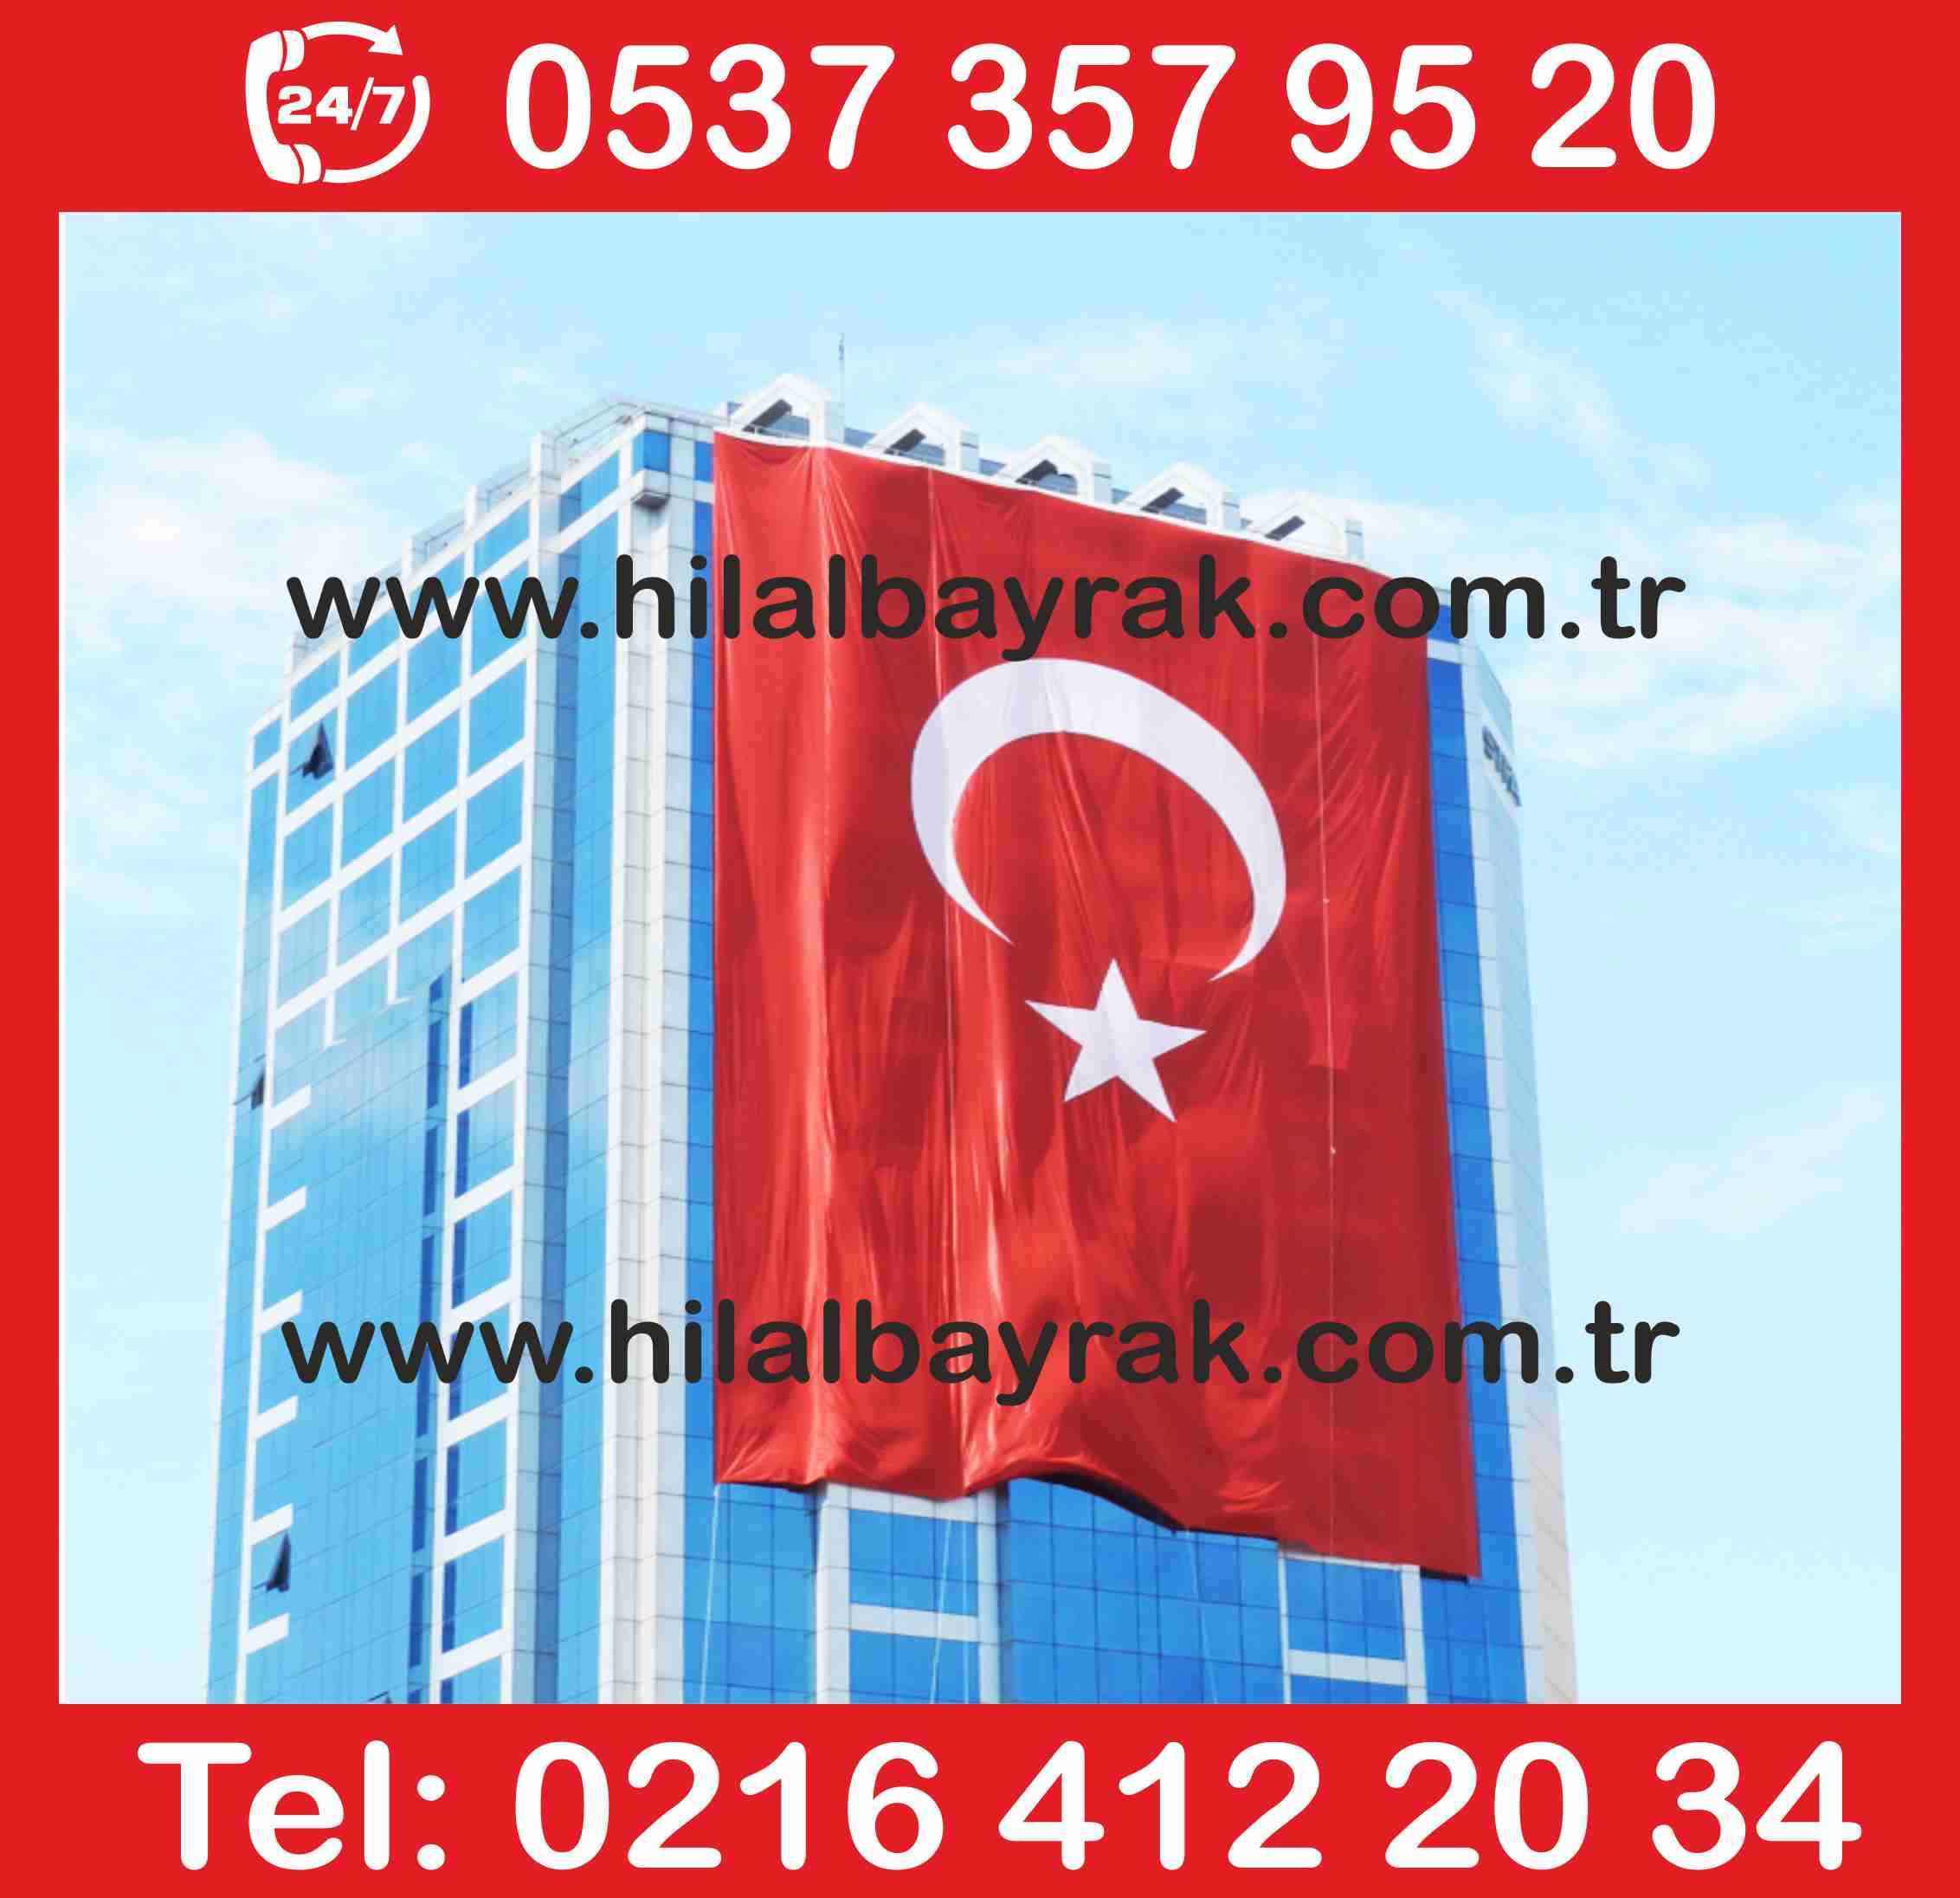 türk bayrak kadiköy Türk Bayrağı  türk bayrak Türk Bayrakları türk bayrak imaları türk üsküdar türk bayrak üretimi imalatı ümraniye